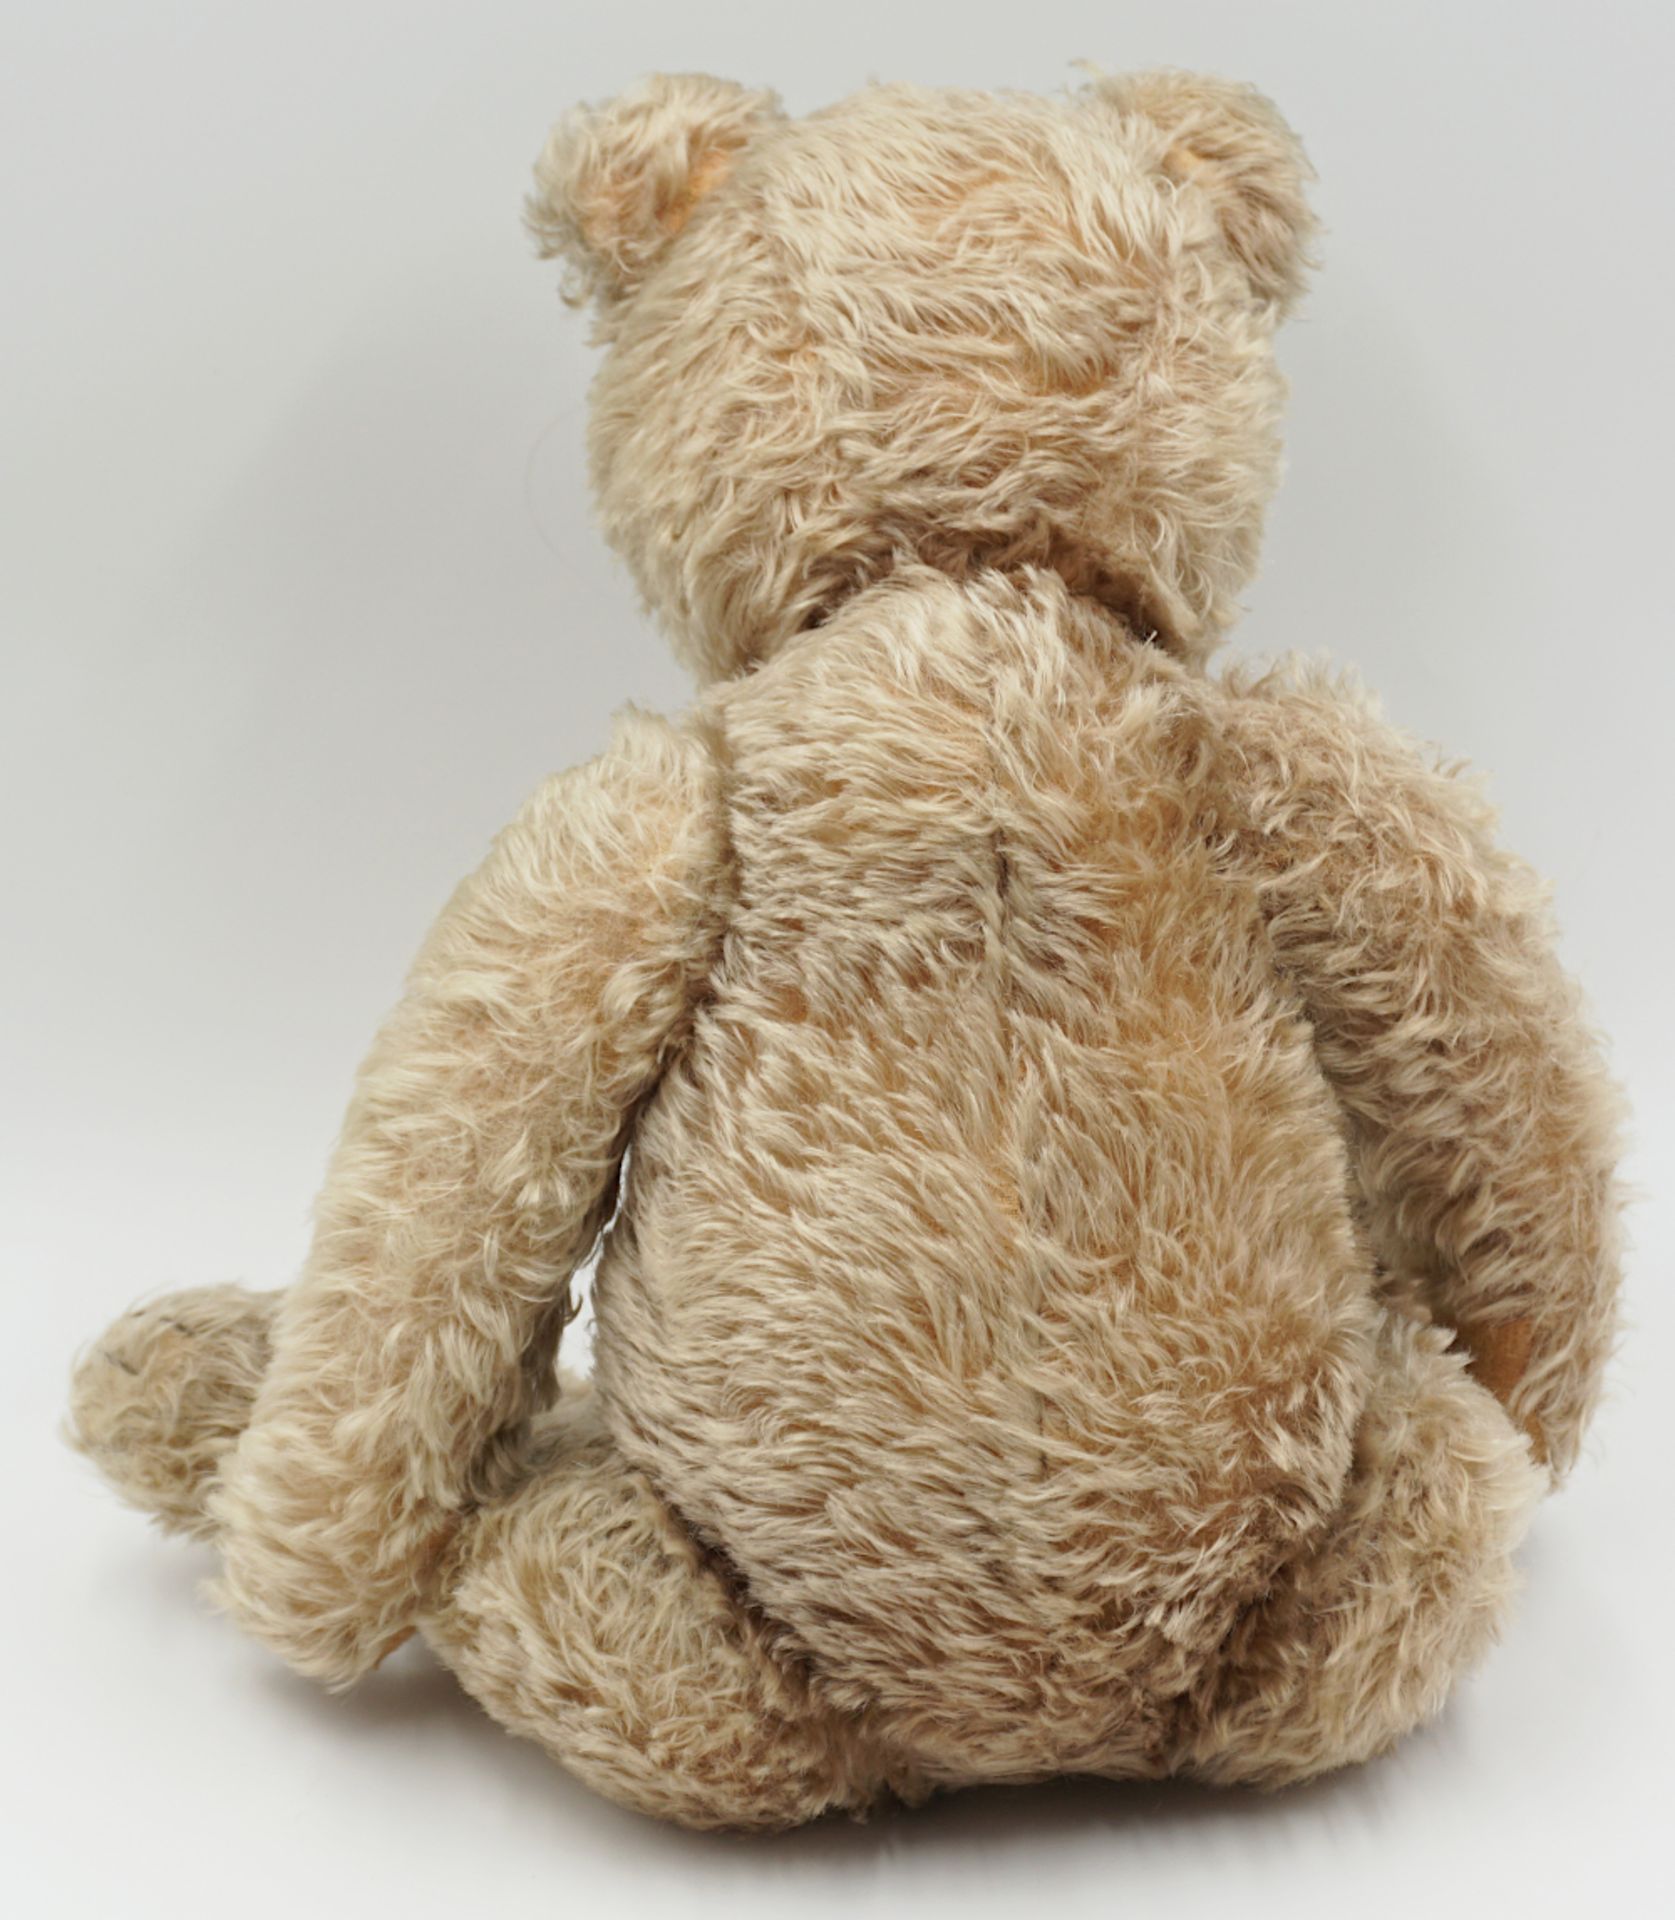 1 Teddybär wohl STEIFF wohl um 1940/50 hellbeiger Mohair - Bild 3 aus 4